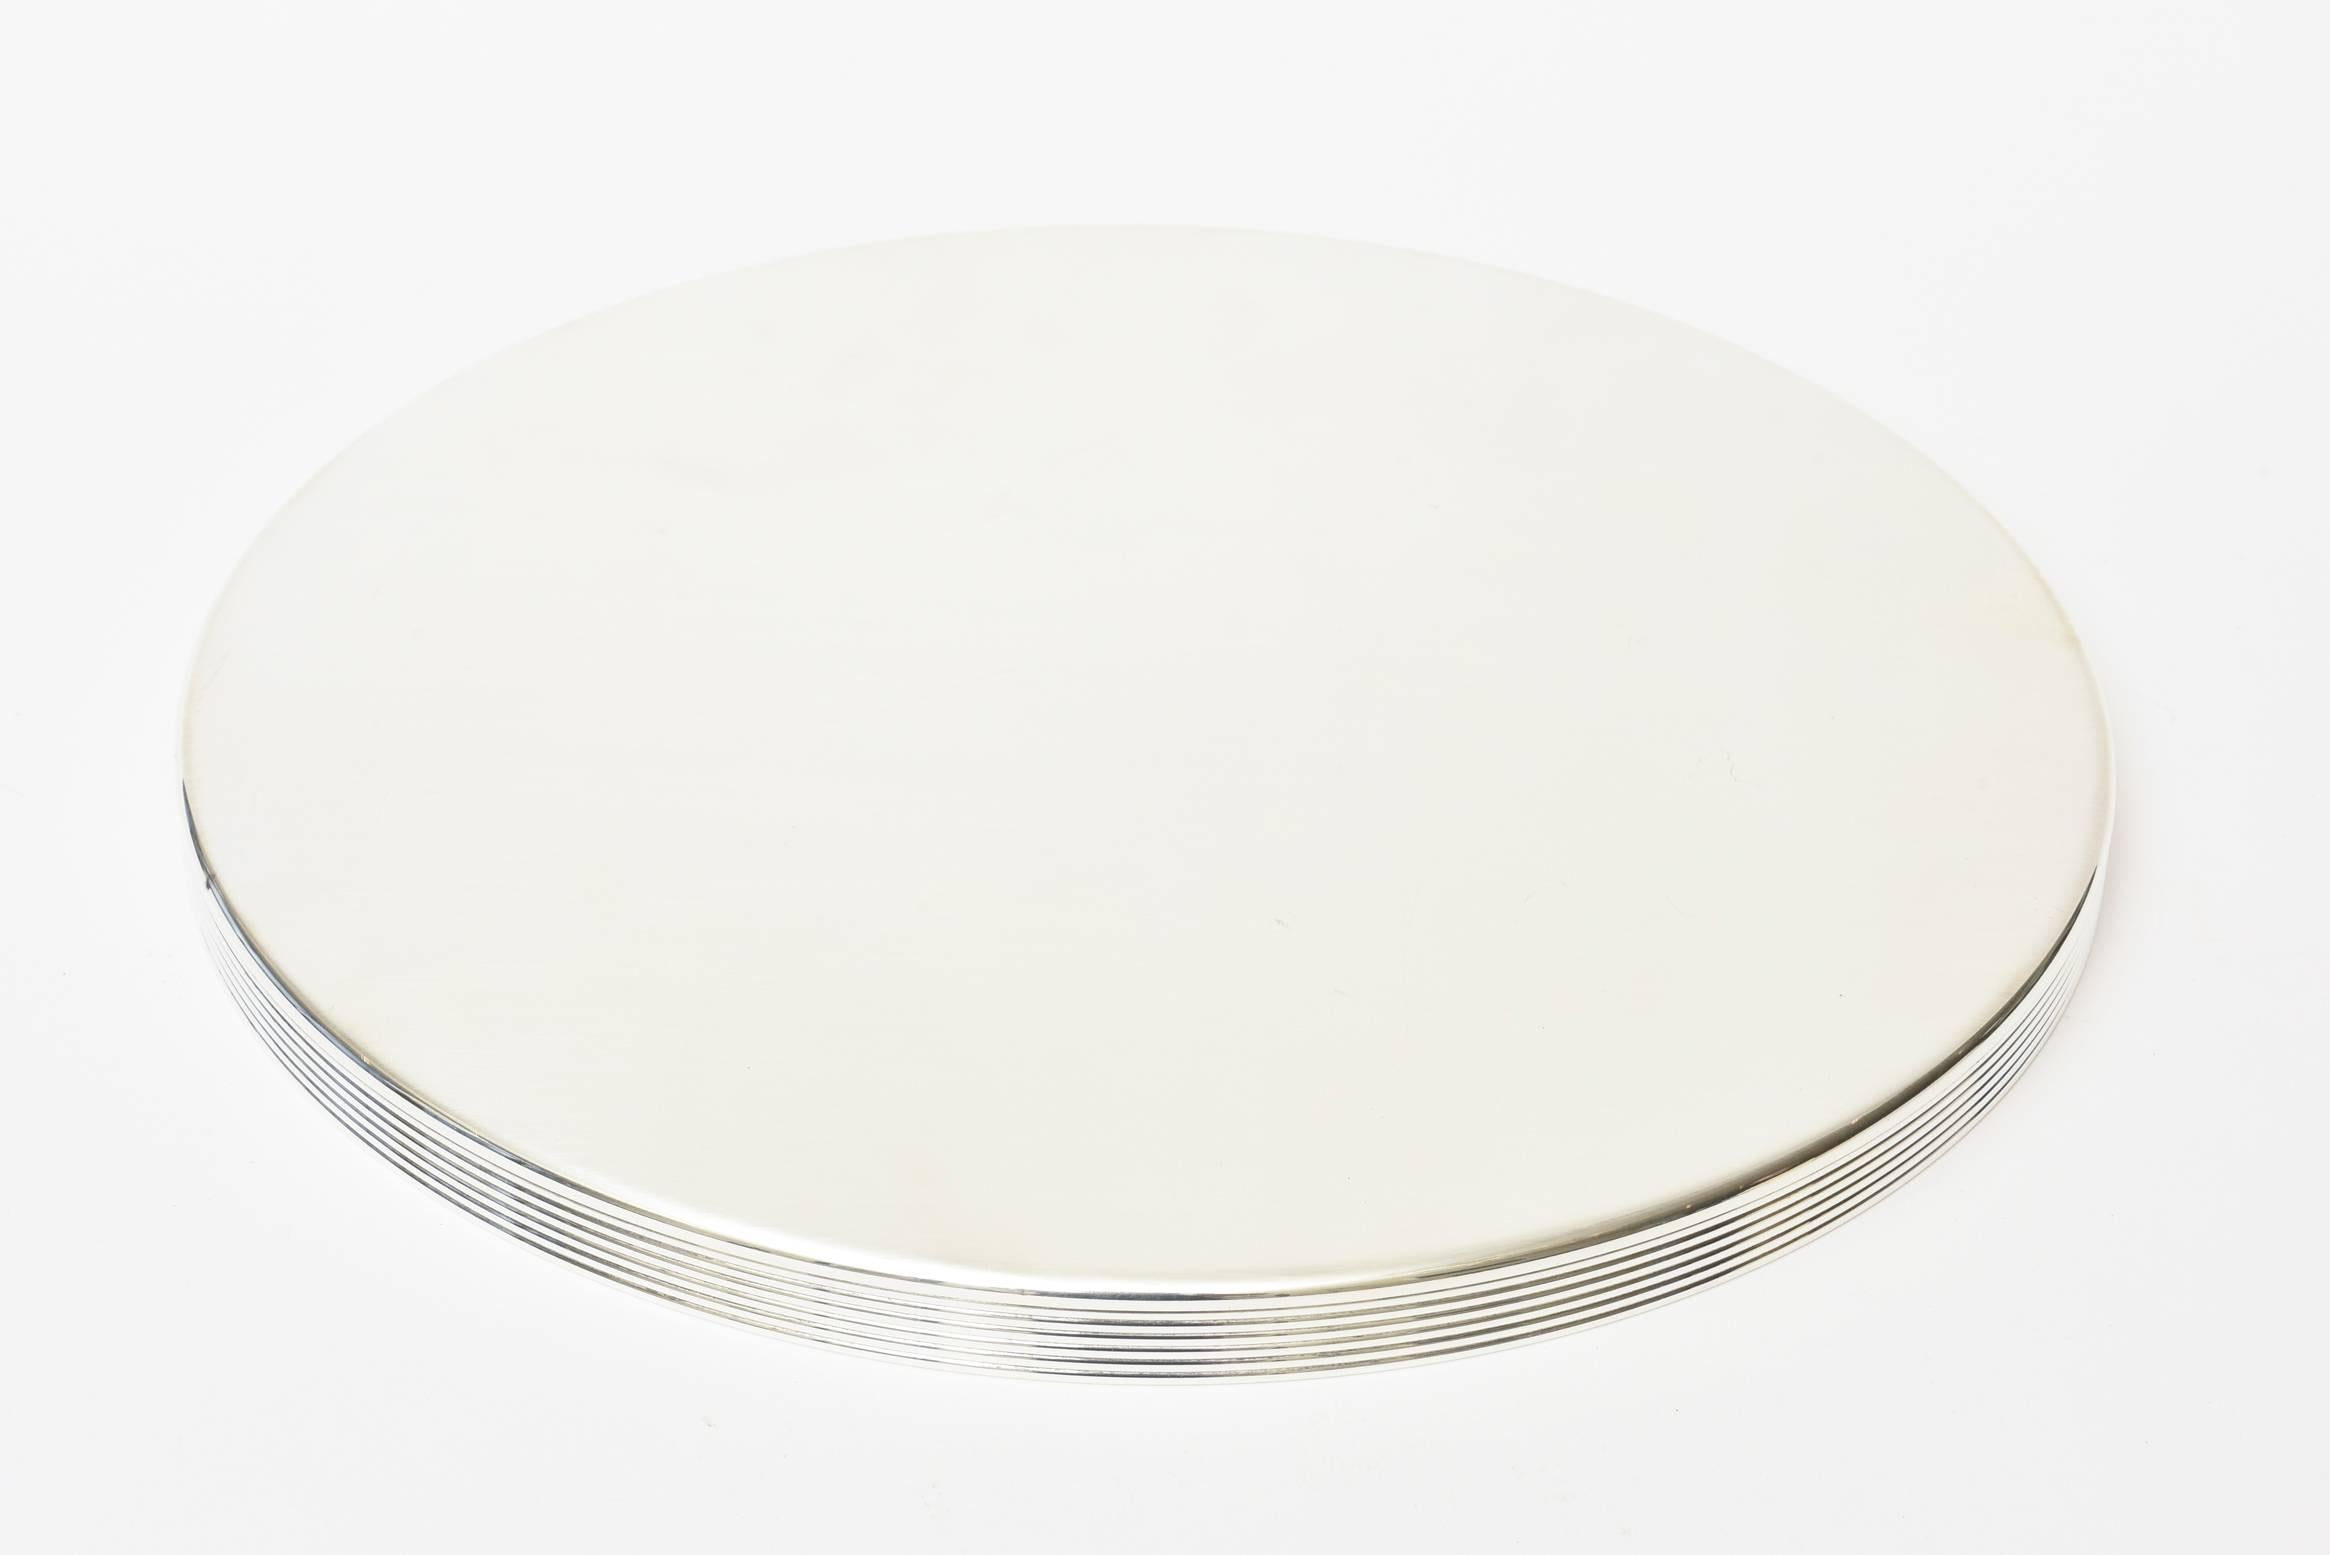 Christofle Silver Plate Round Tray Vintage Barware (Versilberung)